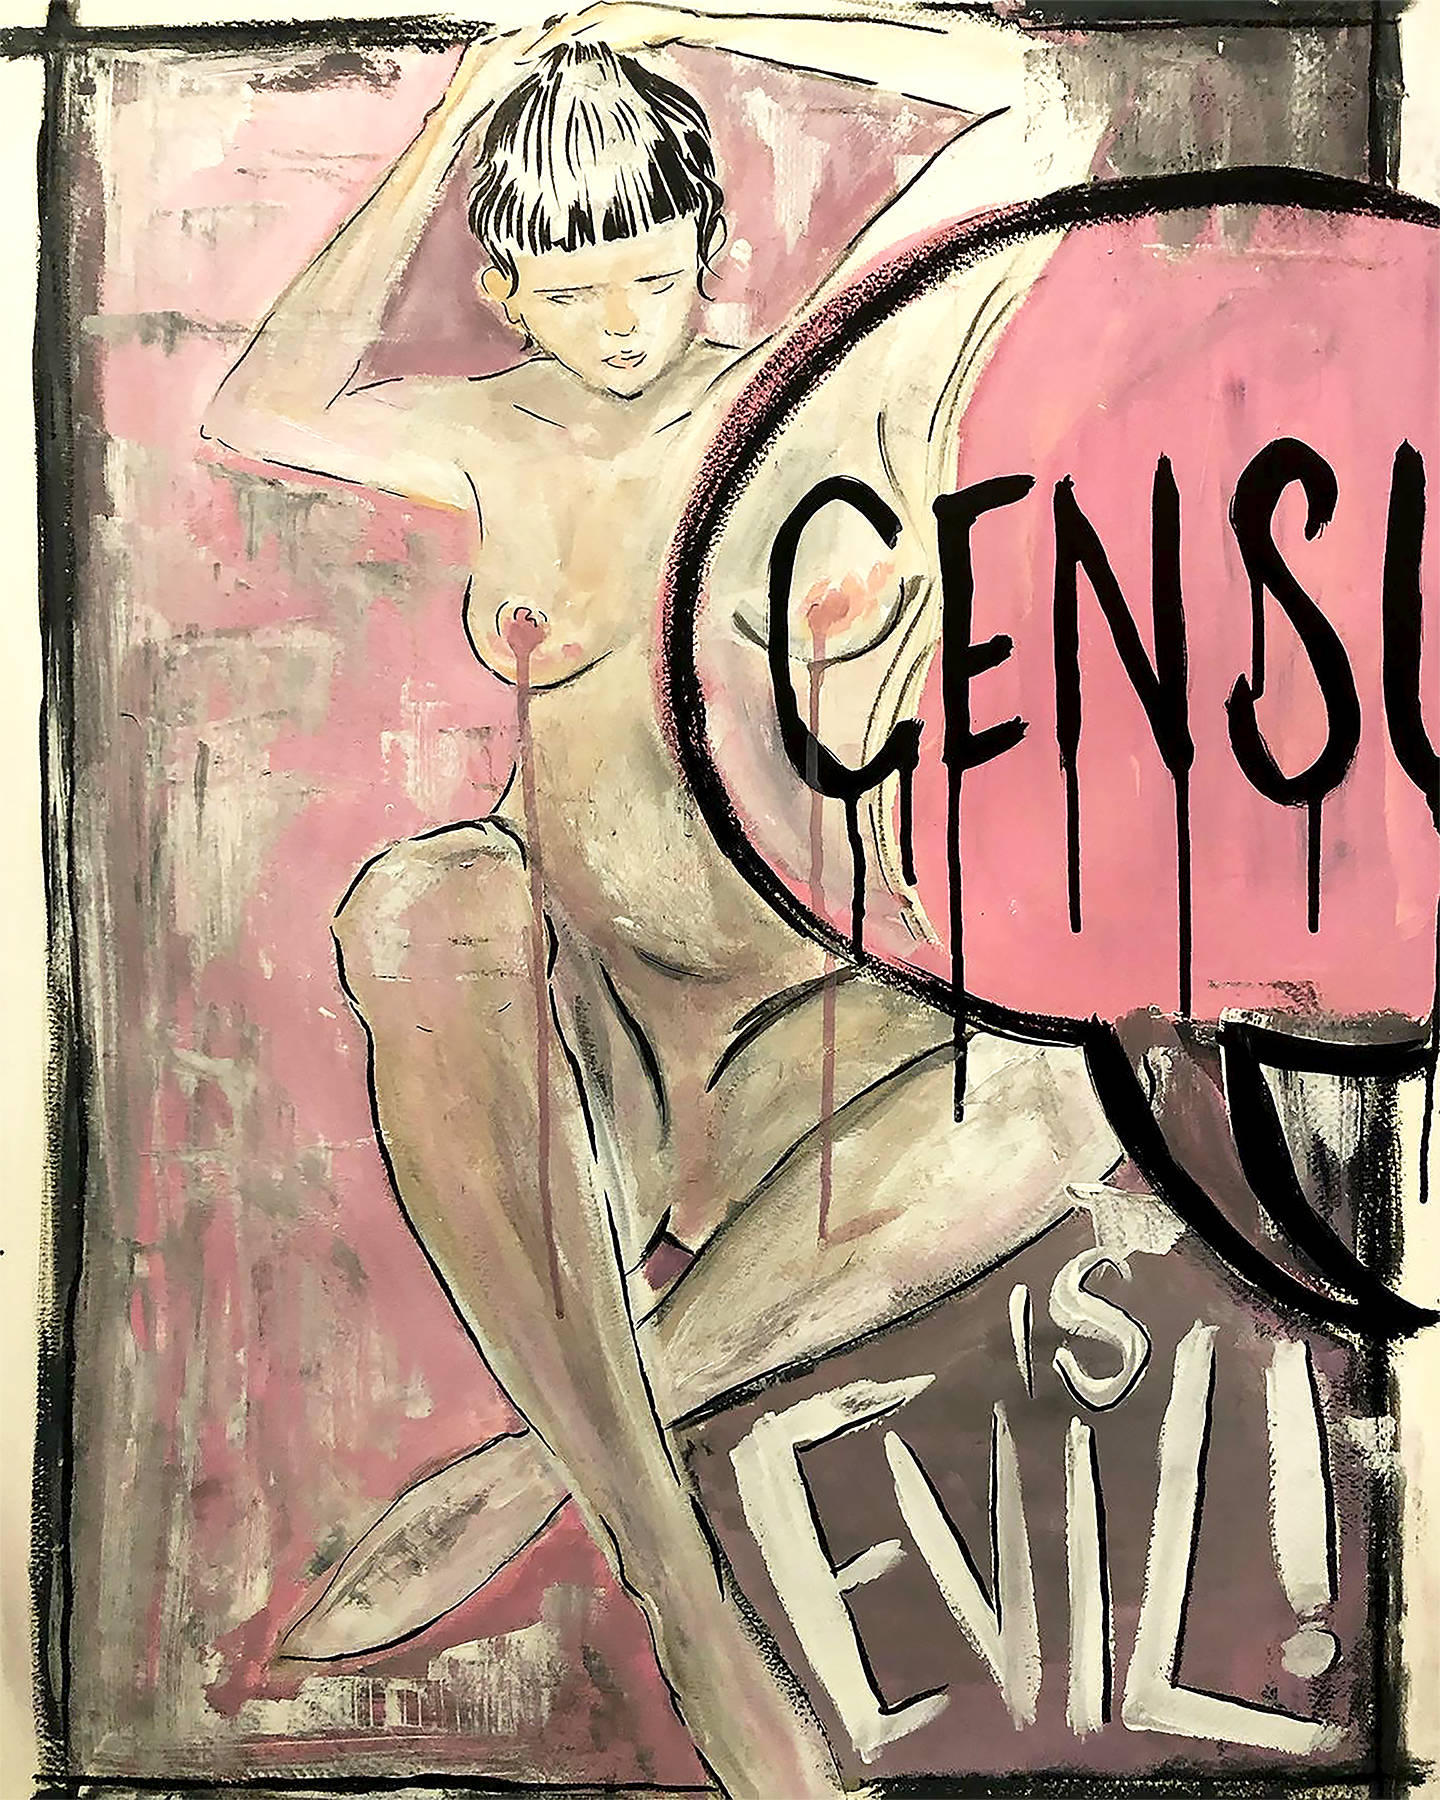 Censure is Evil - by Jule Amorosi